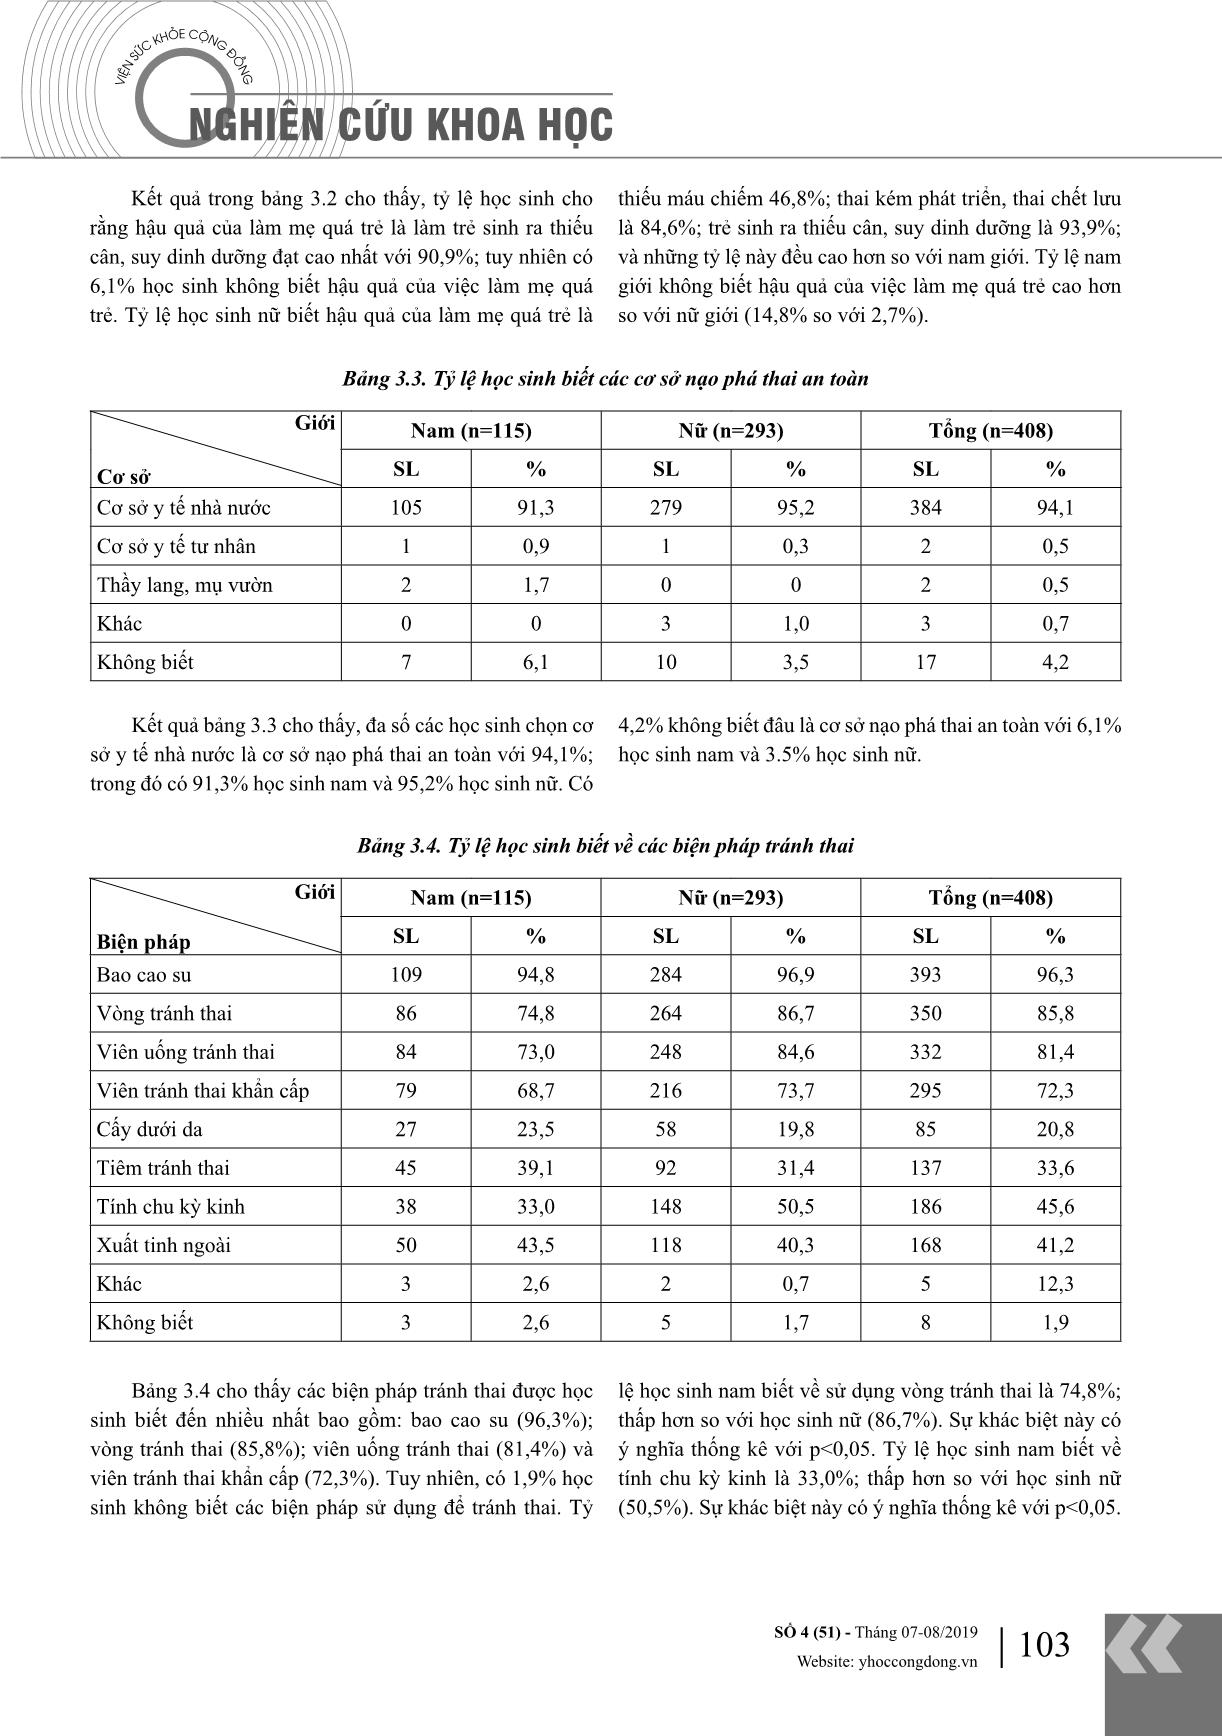 Kiến thức về chăm sóc sức khỏe sinh sản của học sinh trường trung học phổ thông Đông Thụy Anh, huyện Thái Thụy, tỉnh Thái Bình năm 2018 trang 3